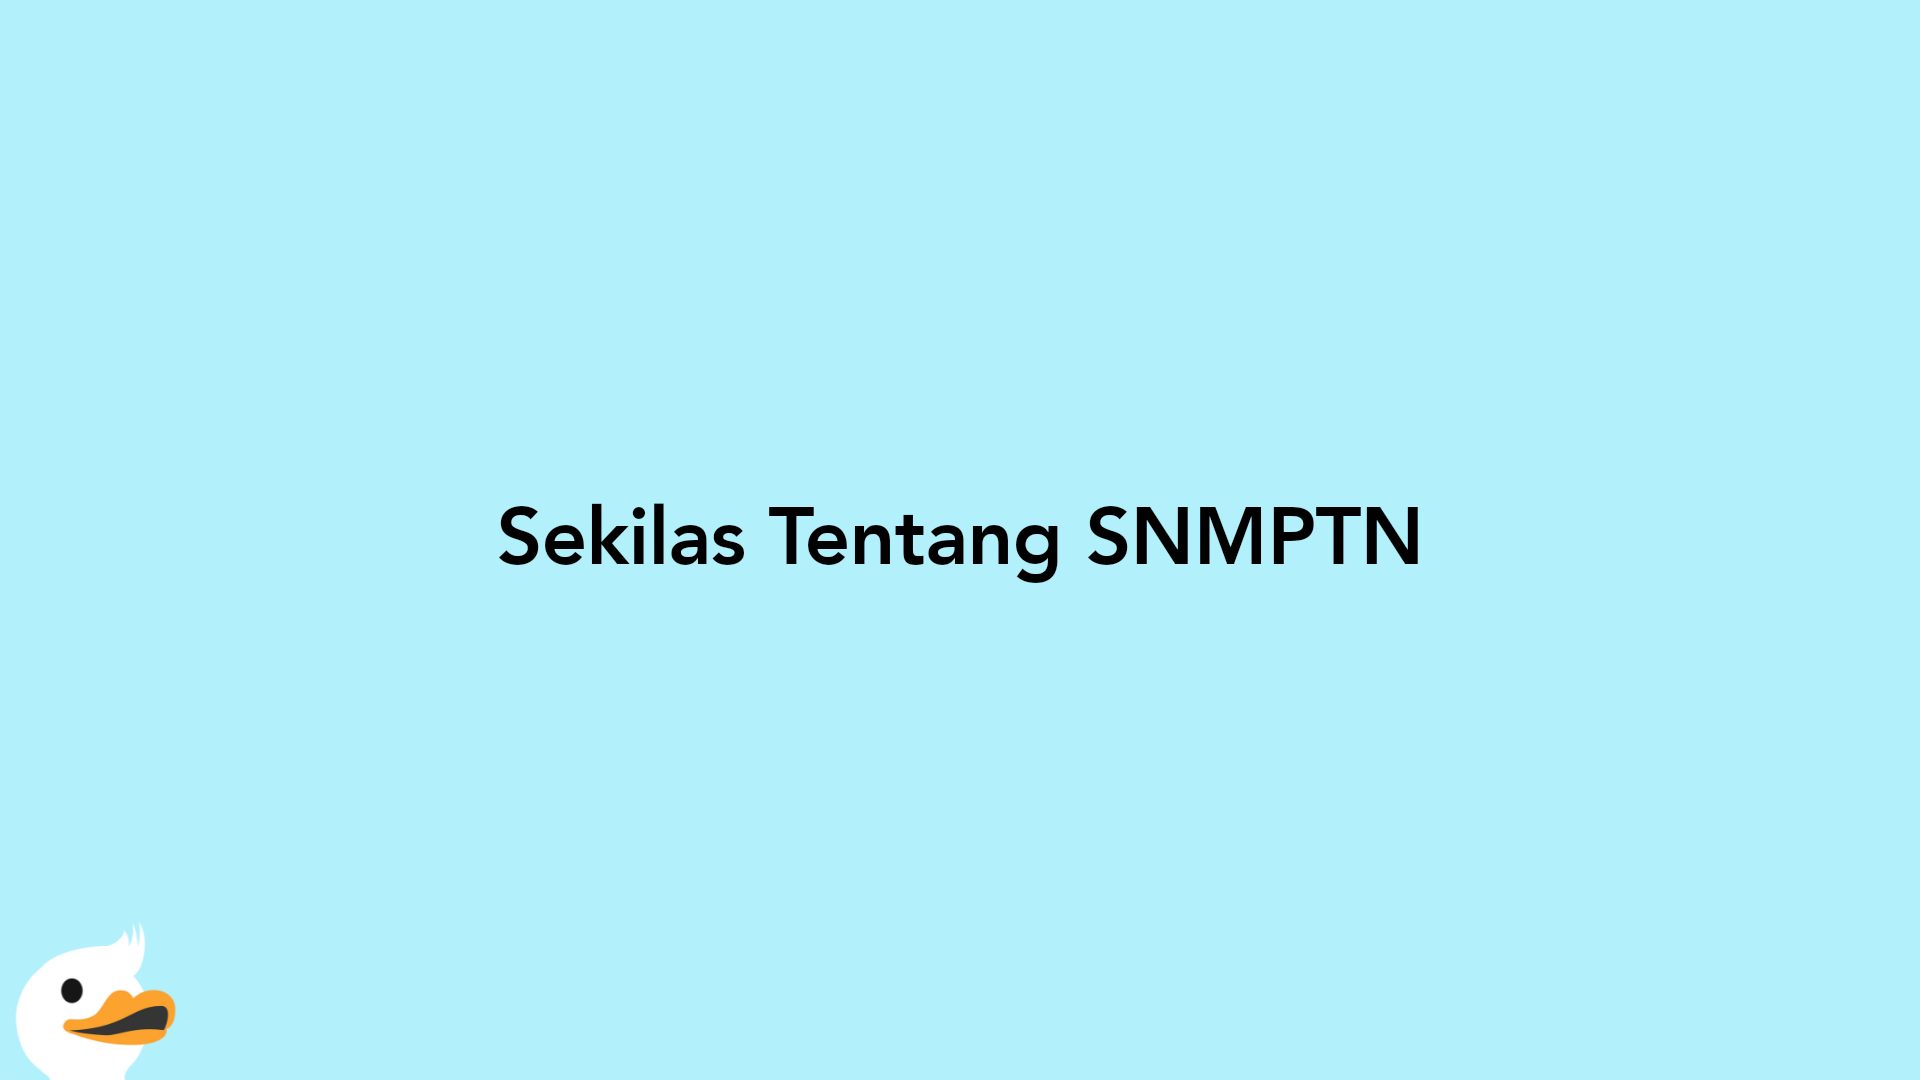 Sekilas Tentang SNMPTN